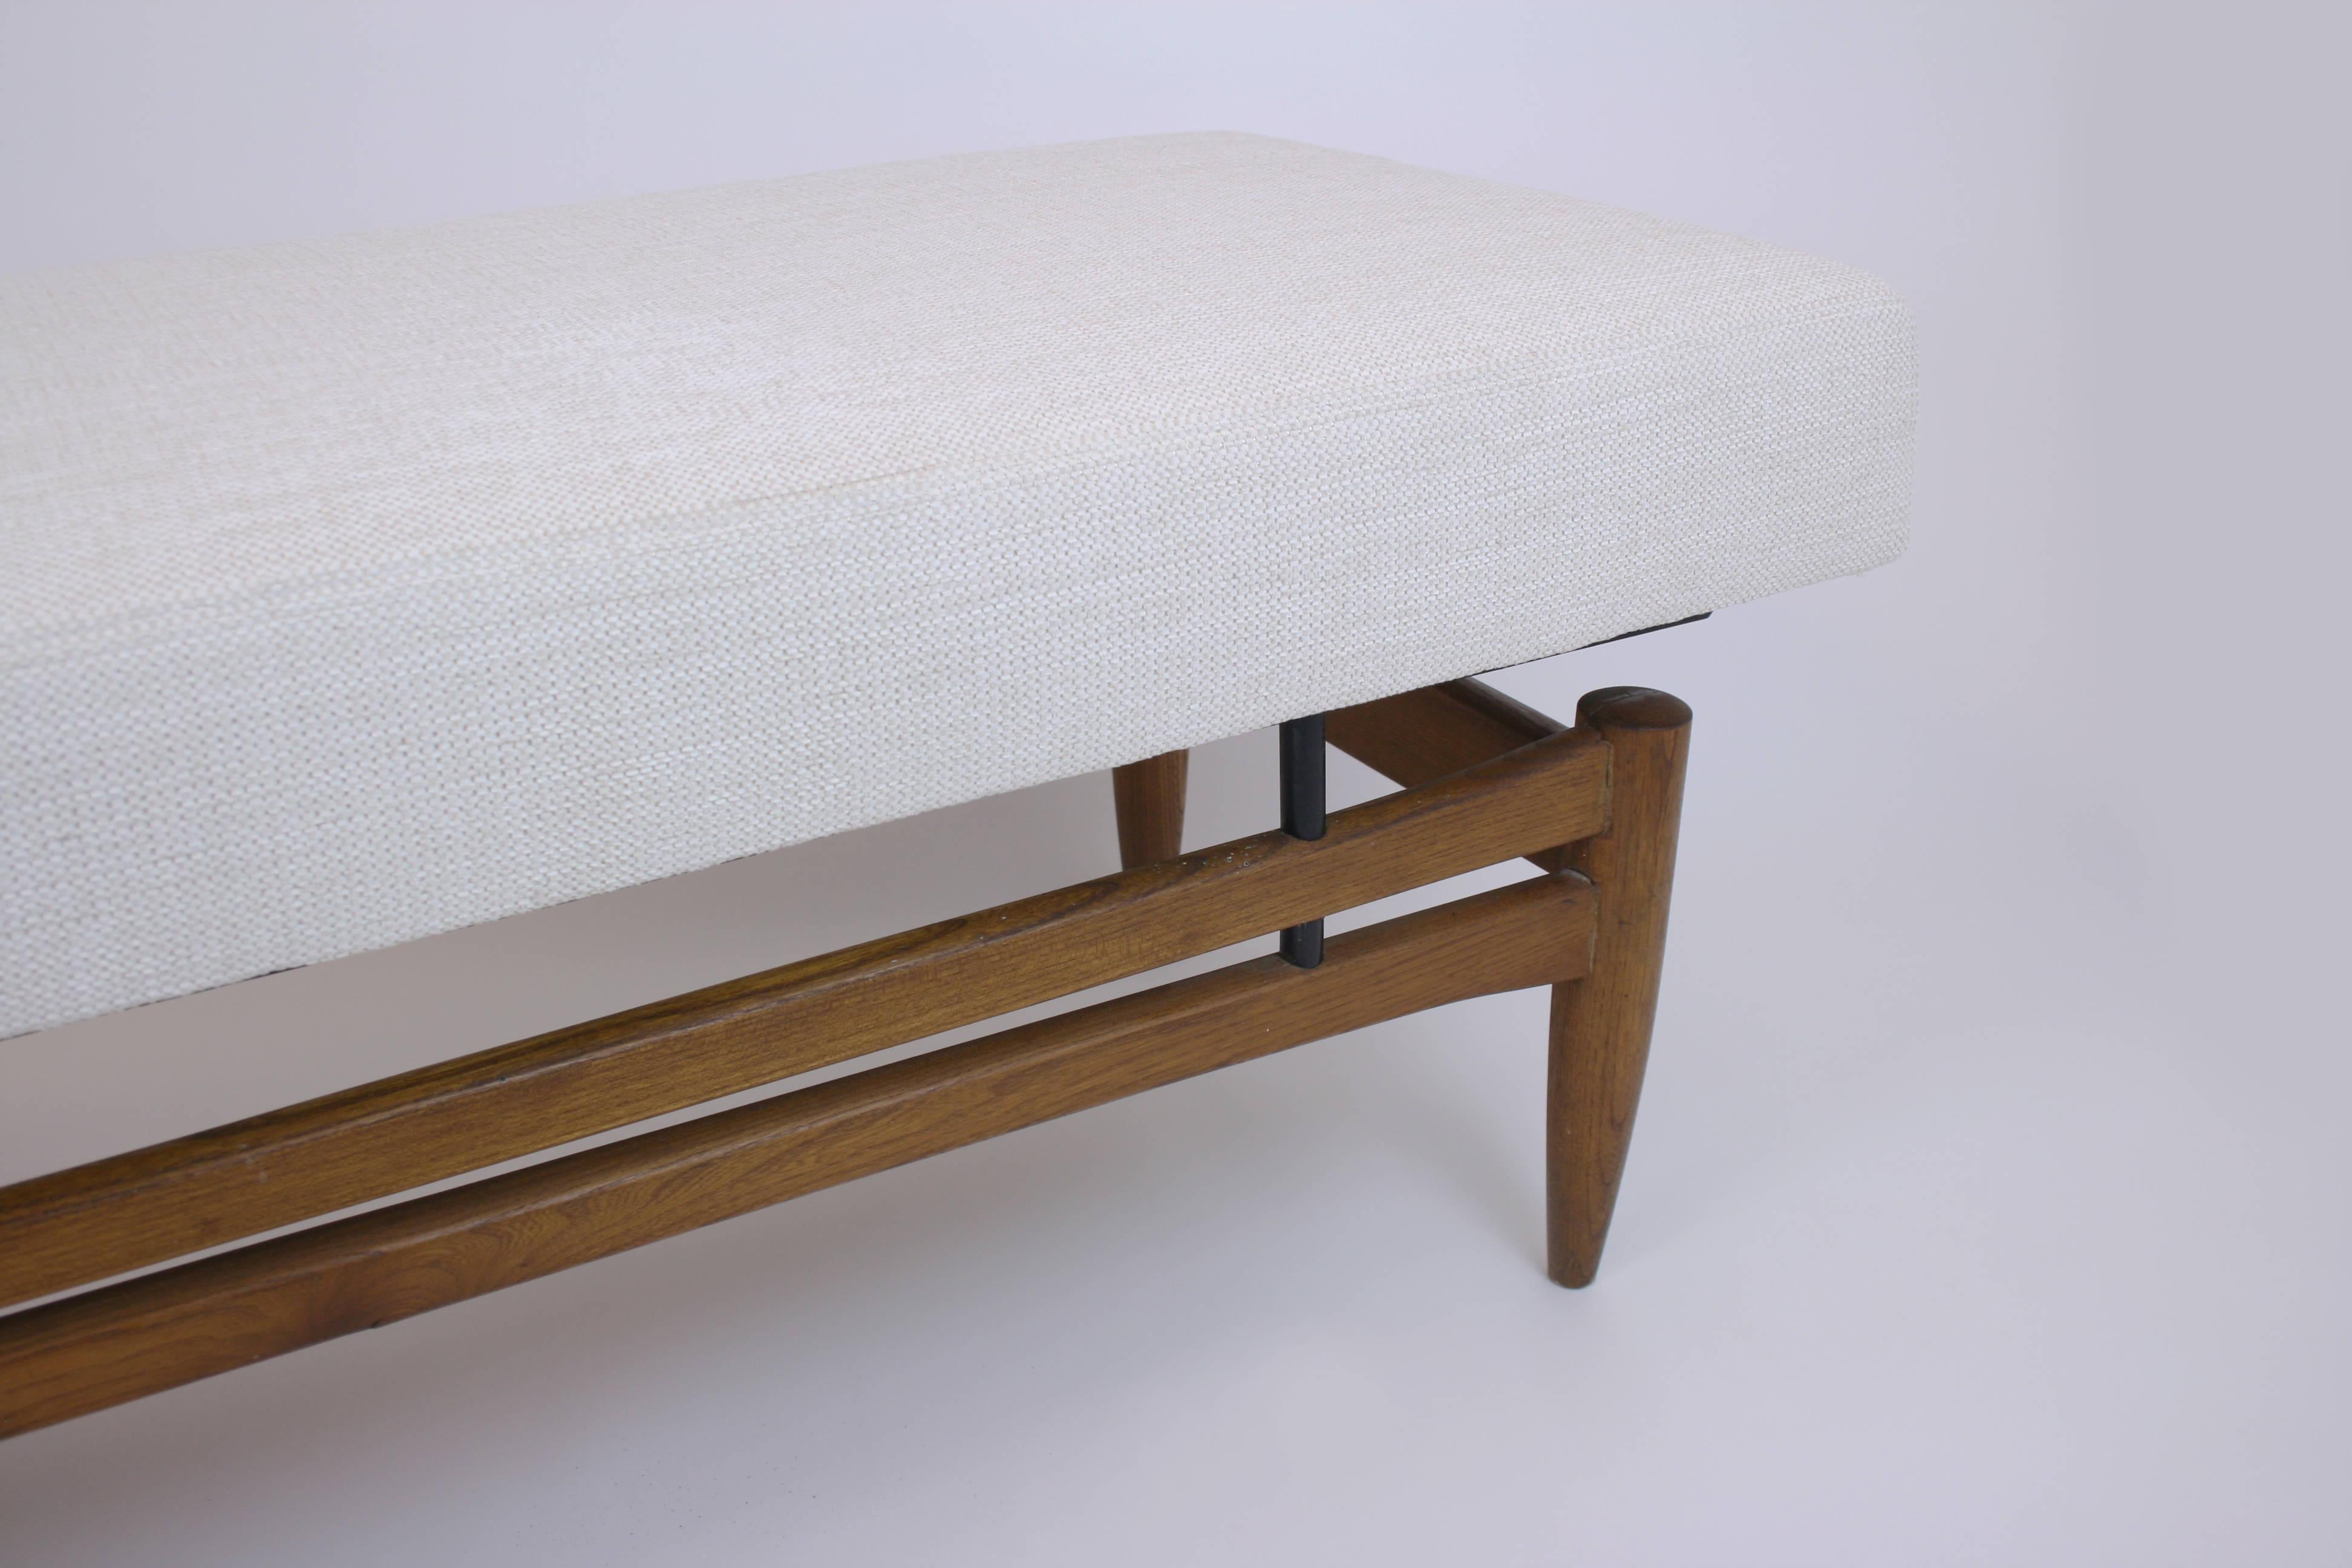 Sofa or Setee in the manner of Finn Juhl Danish Design Teakwood, Denmark, 1960s For Sale 2